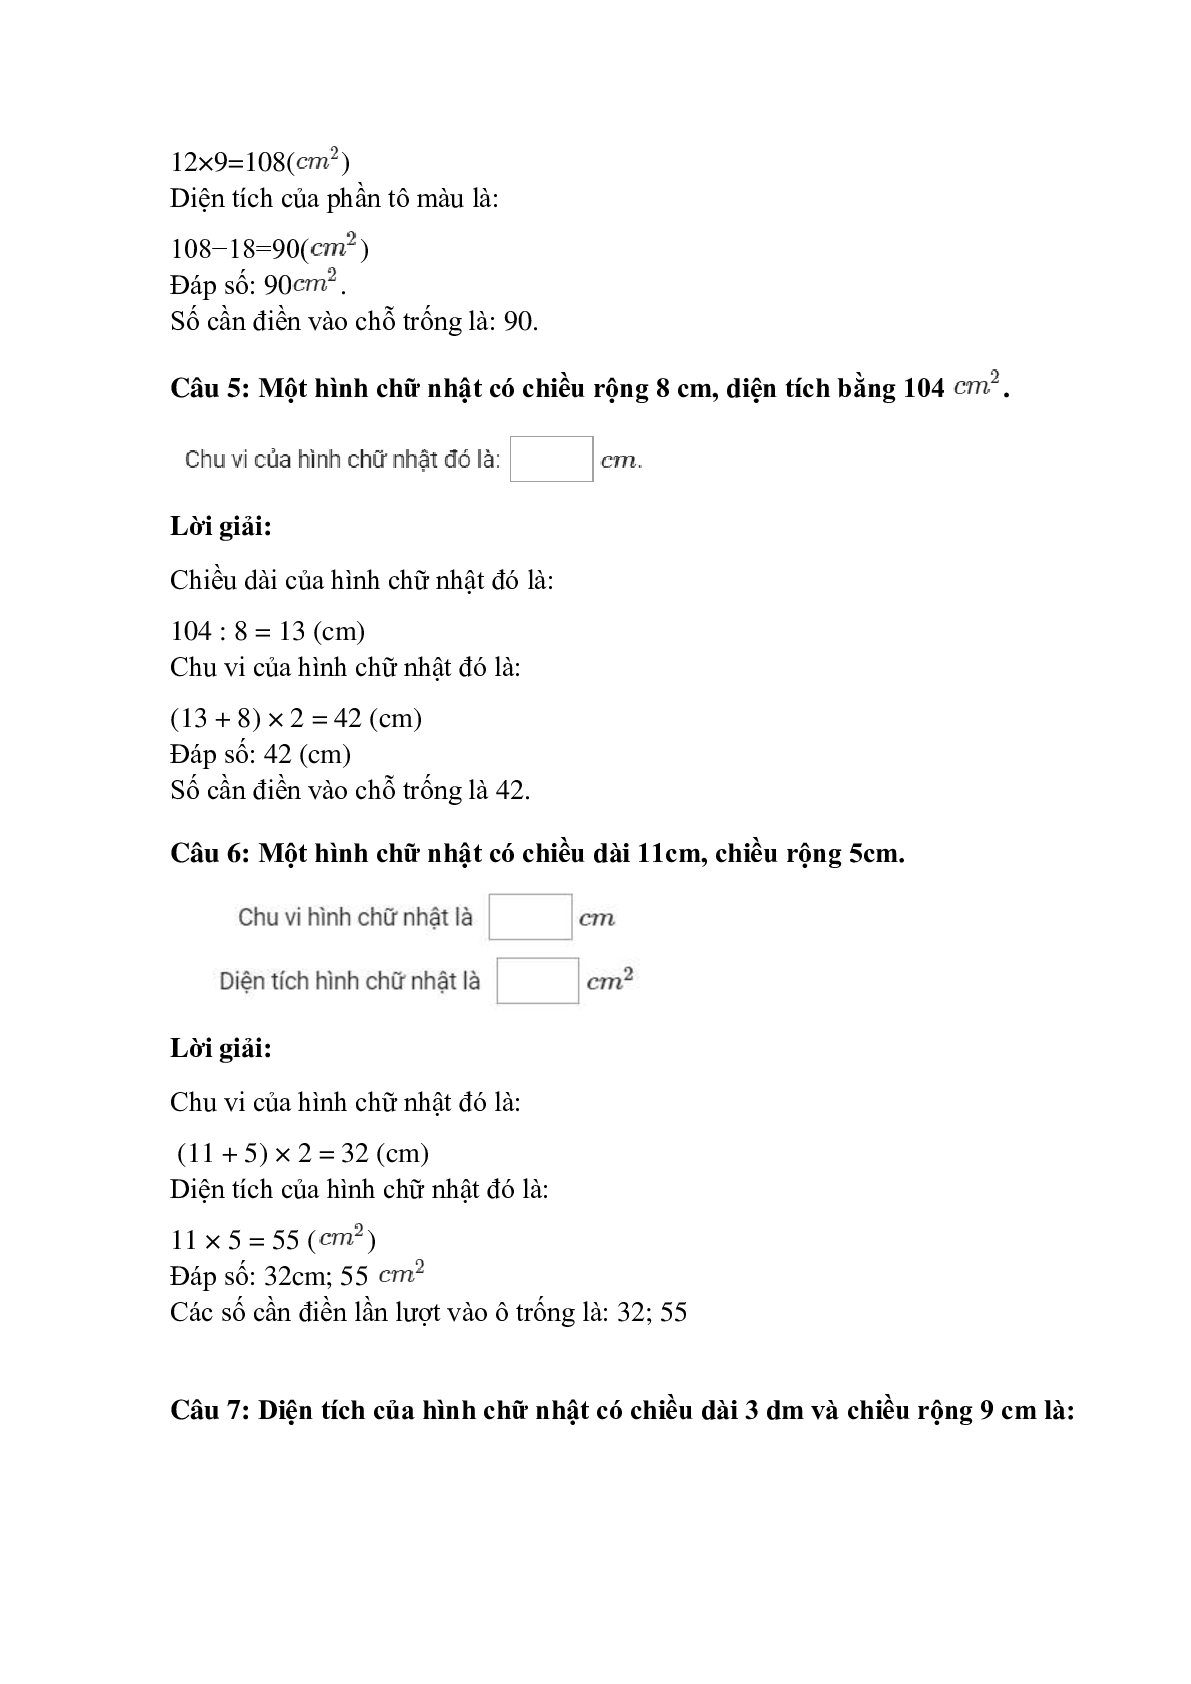 Trắc nghiệm Diện tích hình chữ nhật có đáp án – Toán lớp 3 (trang 3)